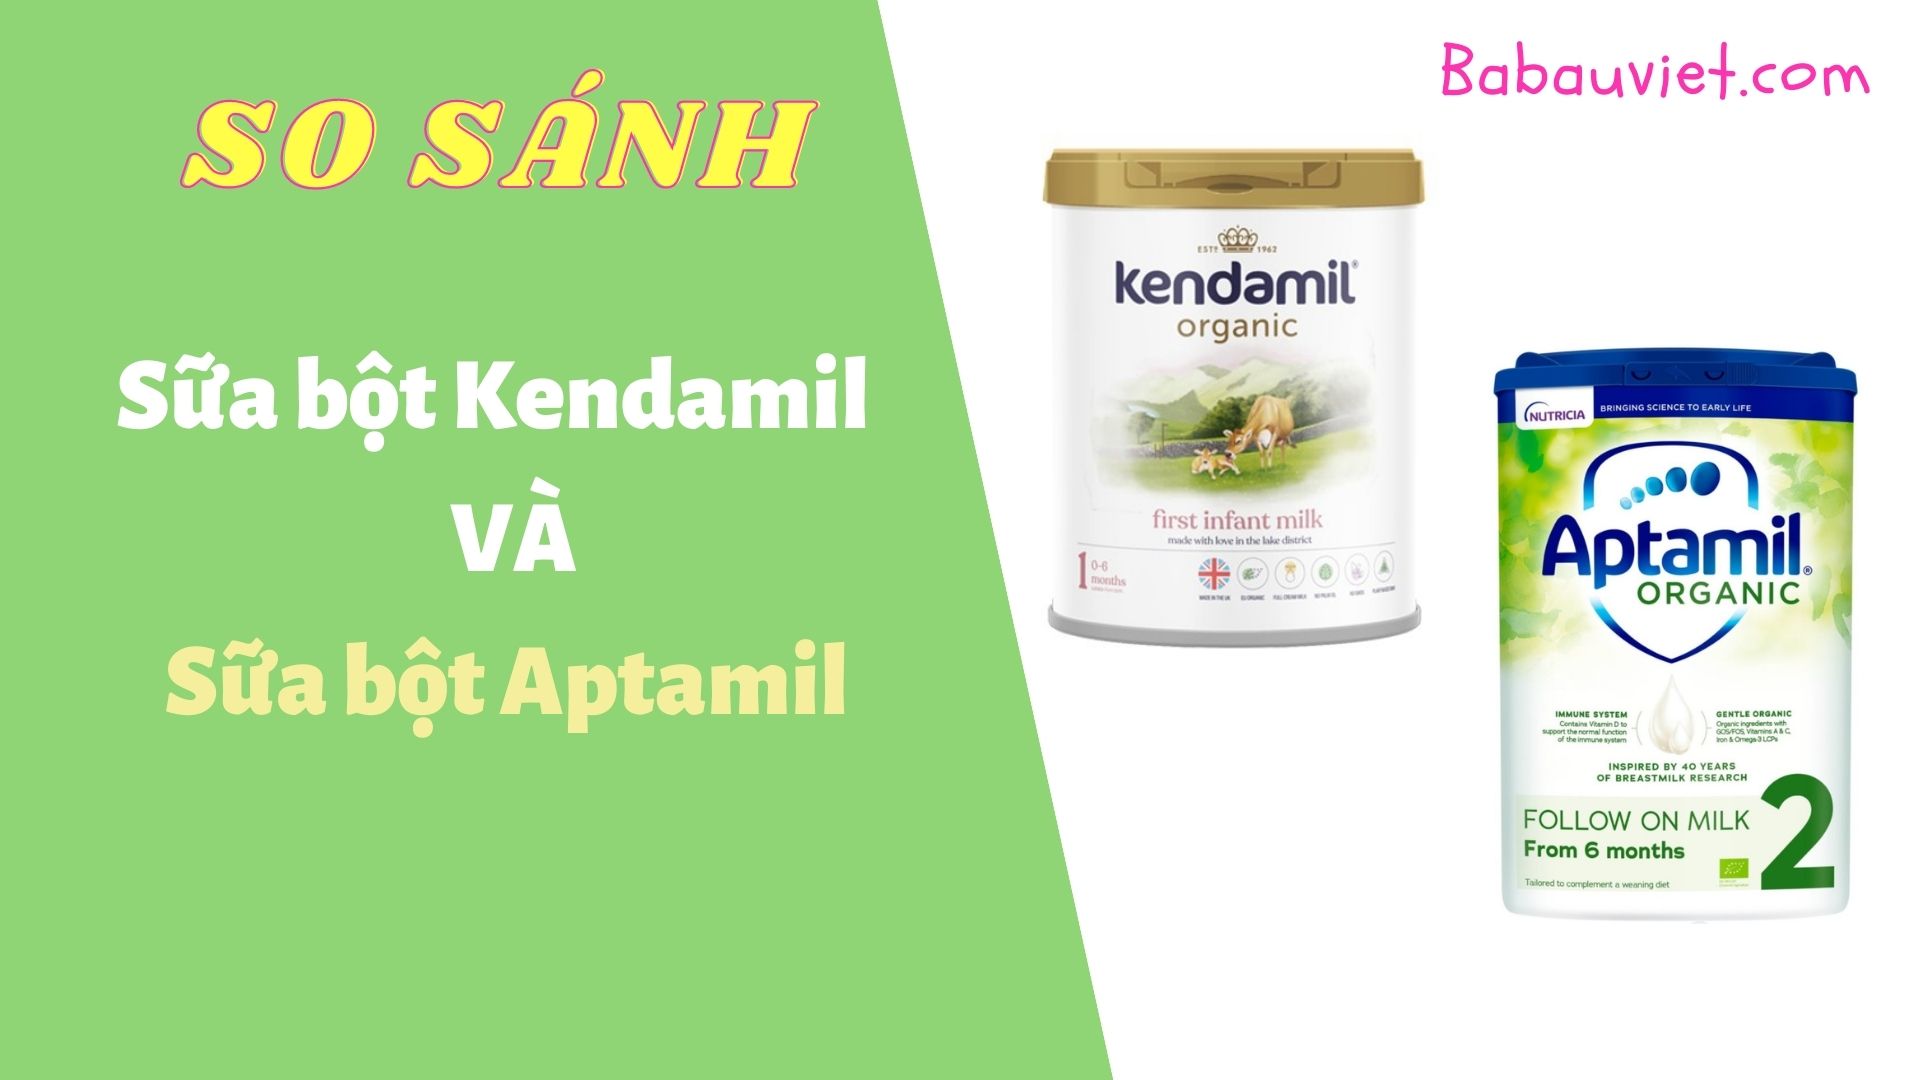 So sánh sữa bột Kendamil và aptamil loại nào tốt hơn